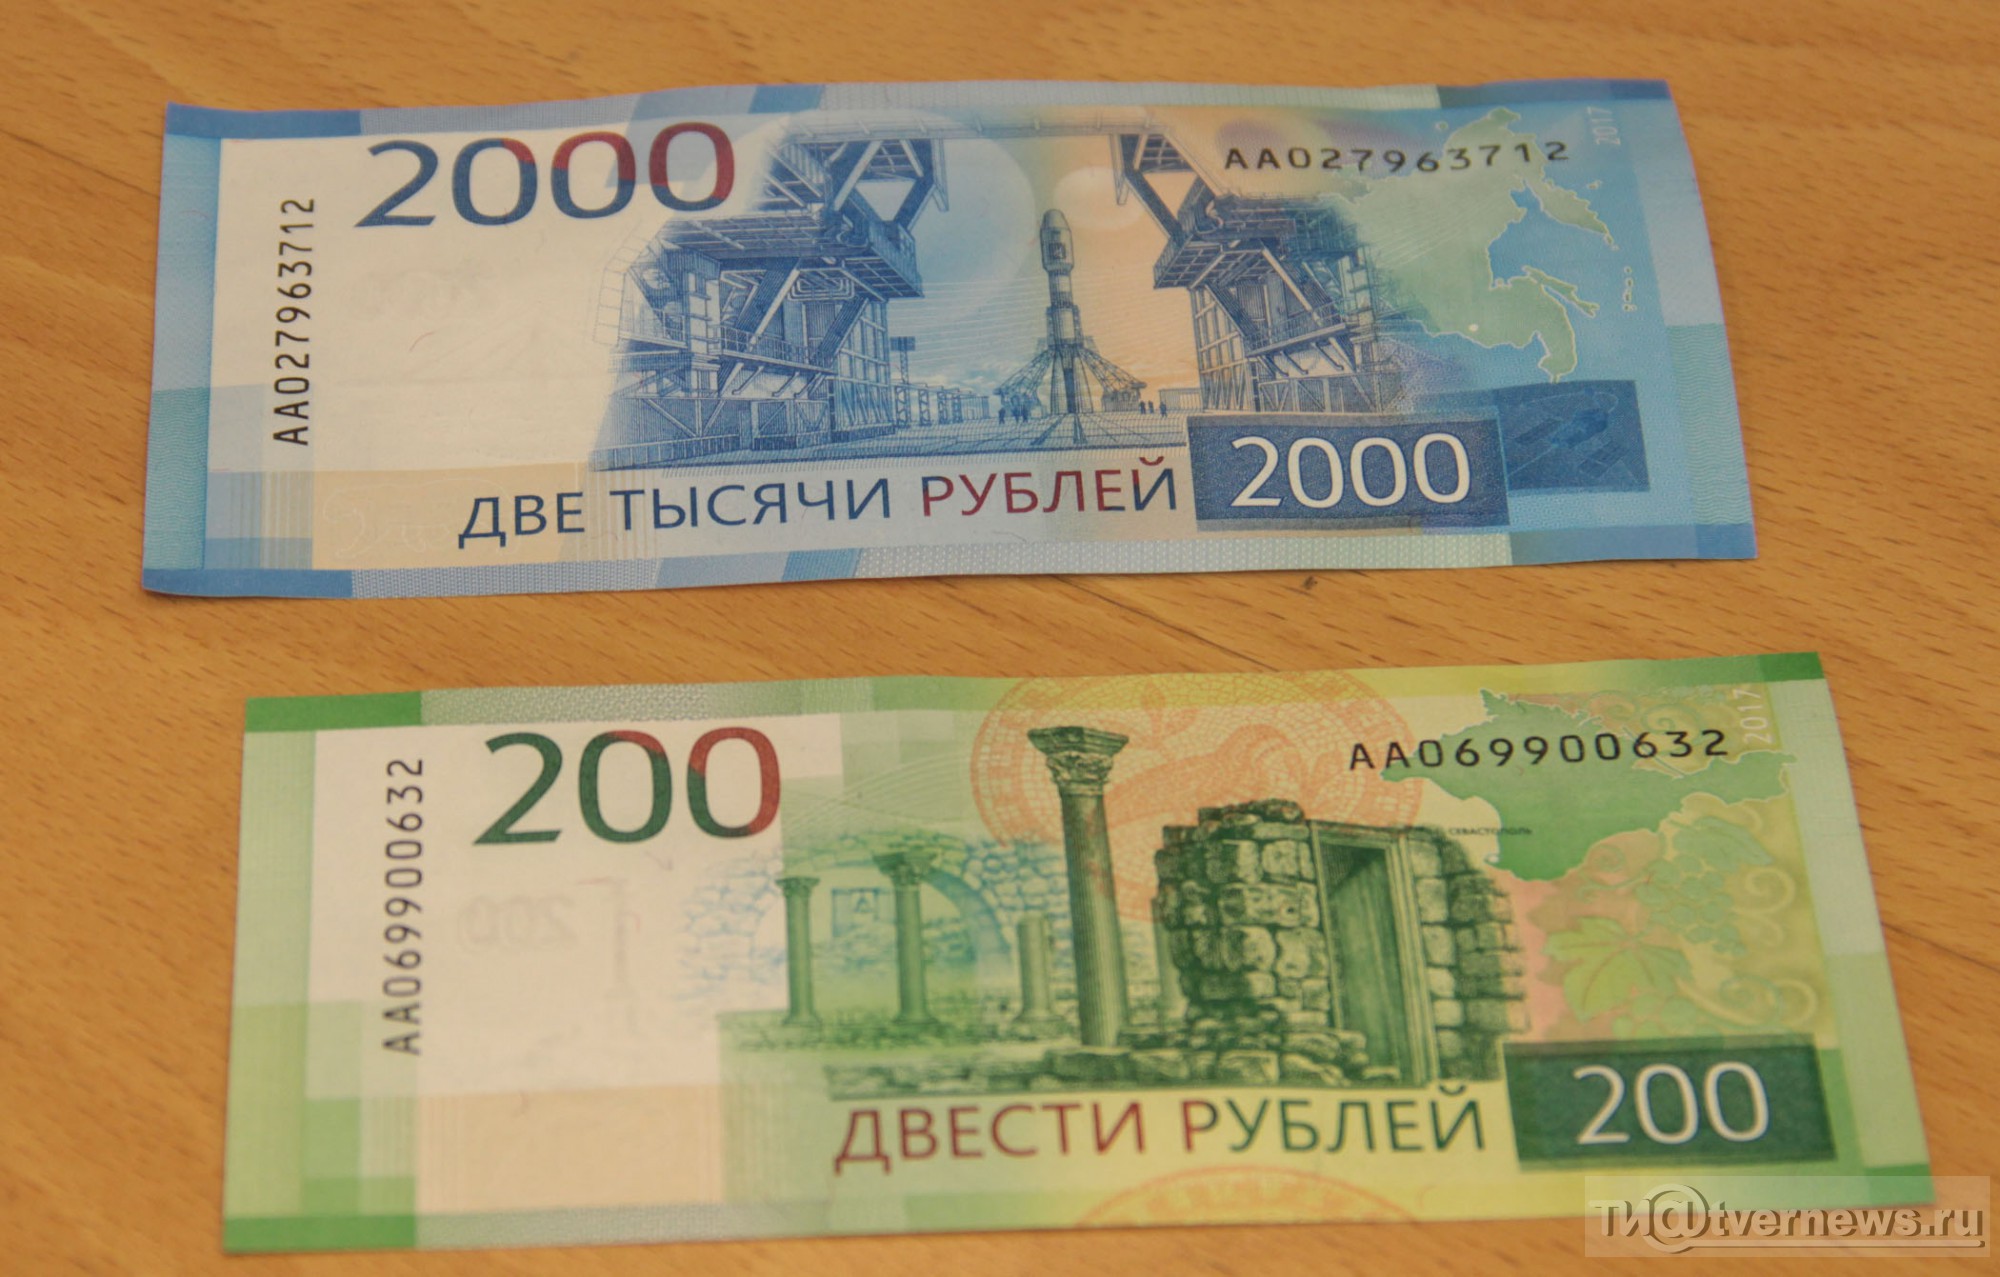 Номиналы новых купюр. 200 И 2000 рублей. Купюры 200 и 2000 рублей. 200 Рублей банкнота. Две тысячи рублей.